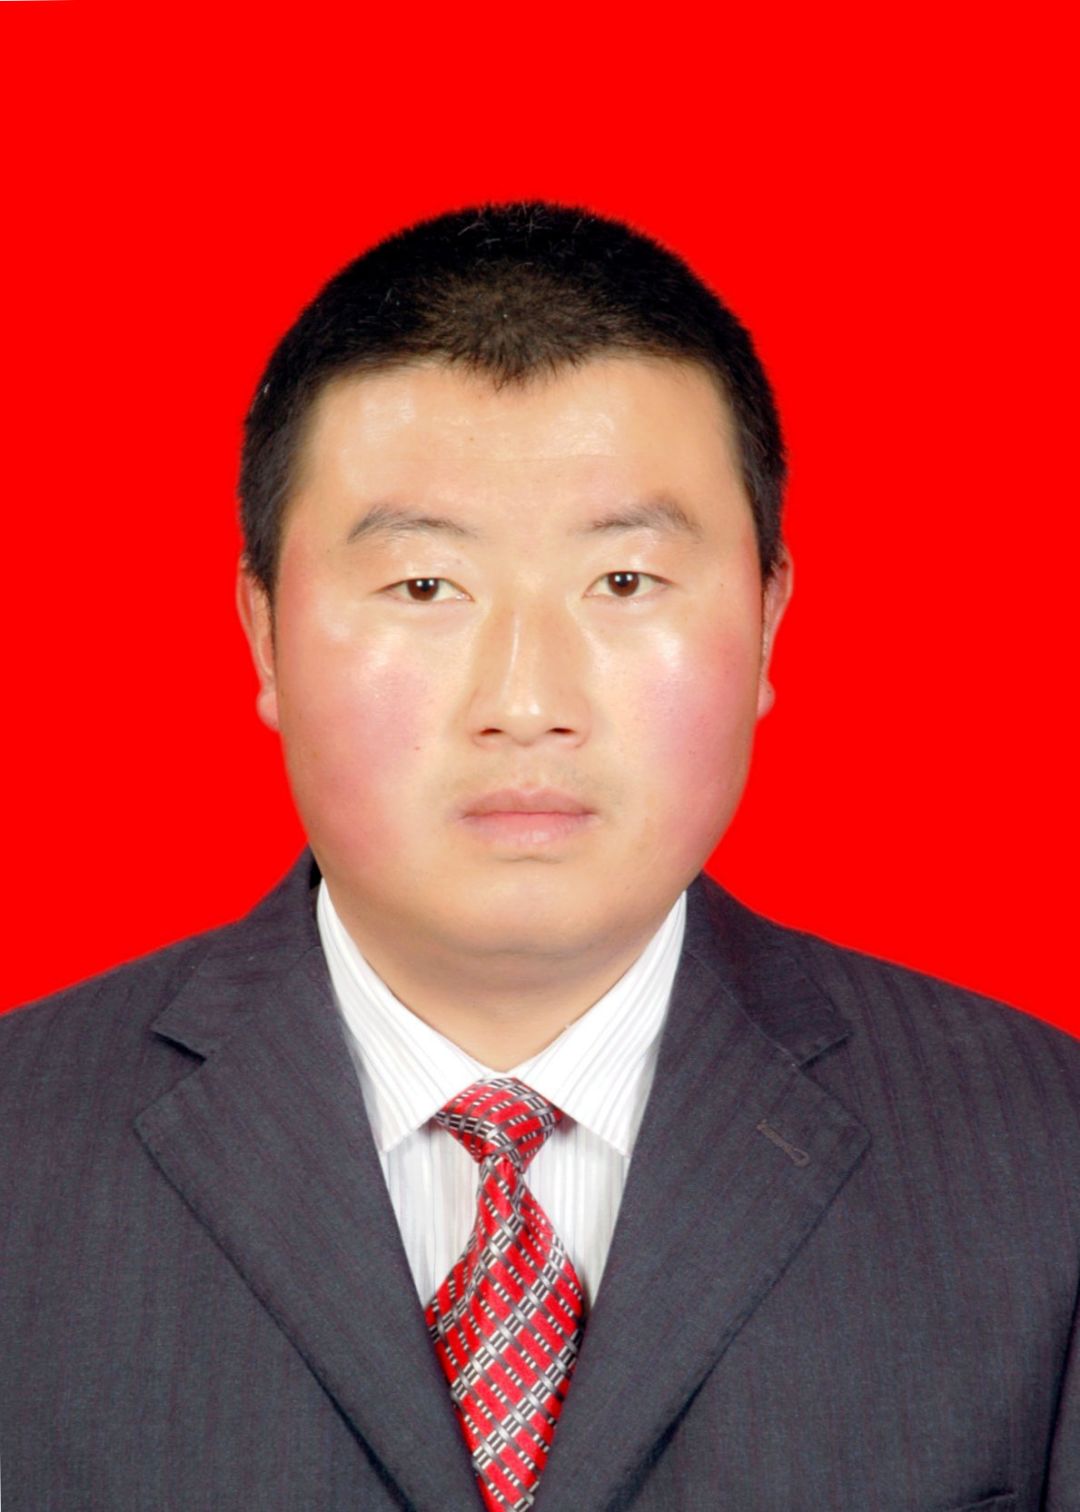 胡小春,男,汉族,生于1979年11月,泾川县窑店镇人,2001年8月参加工作